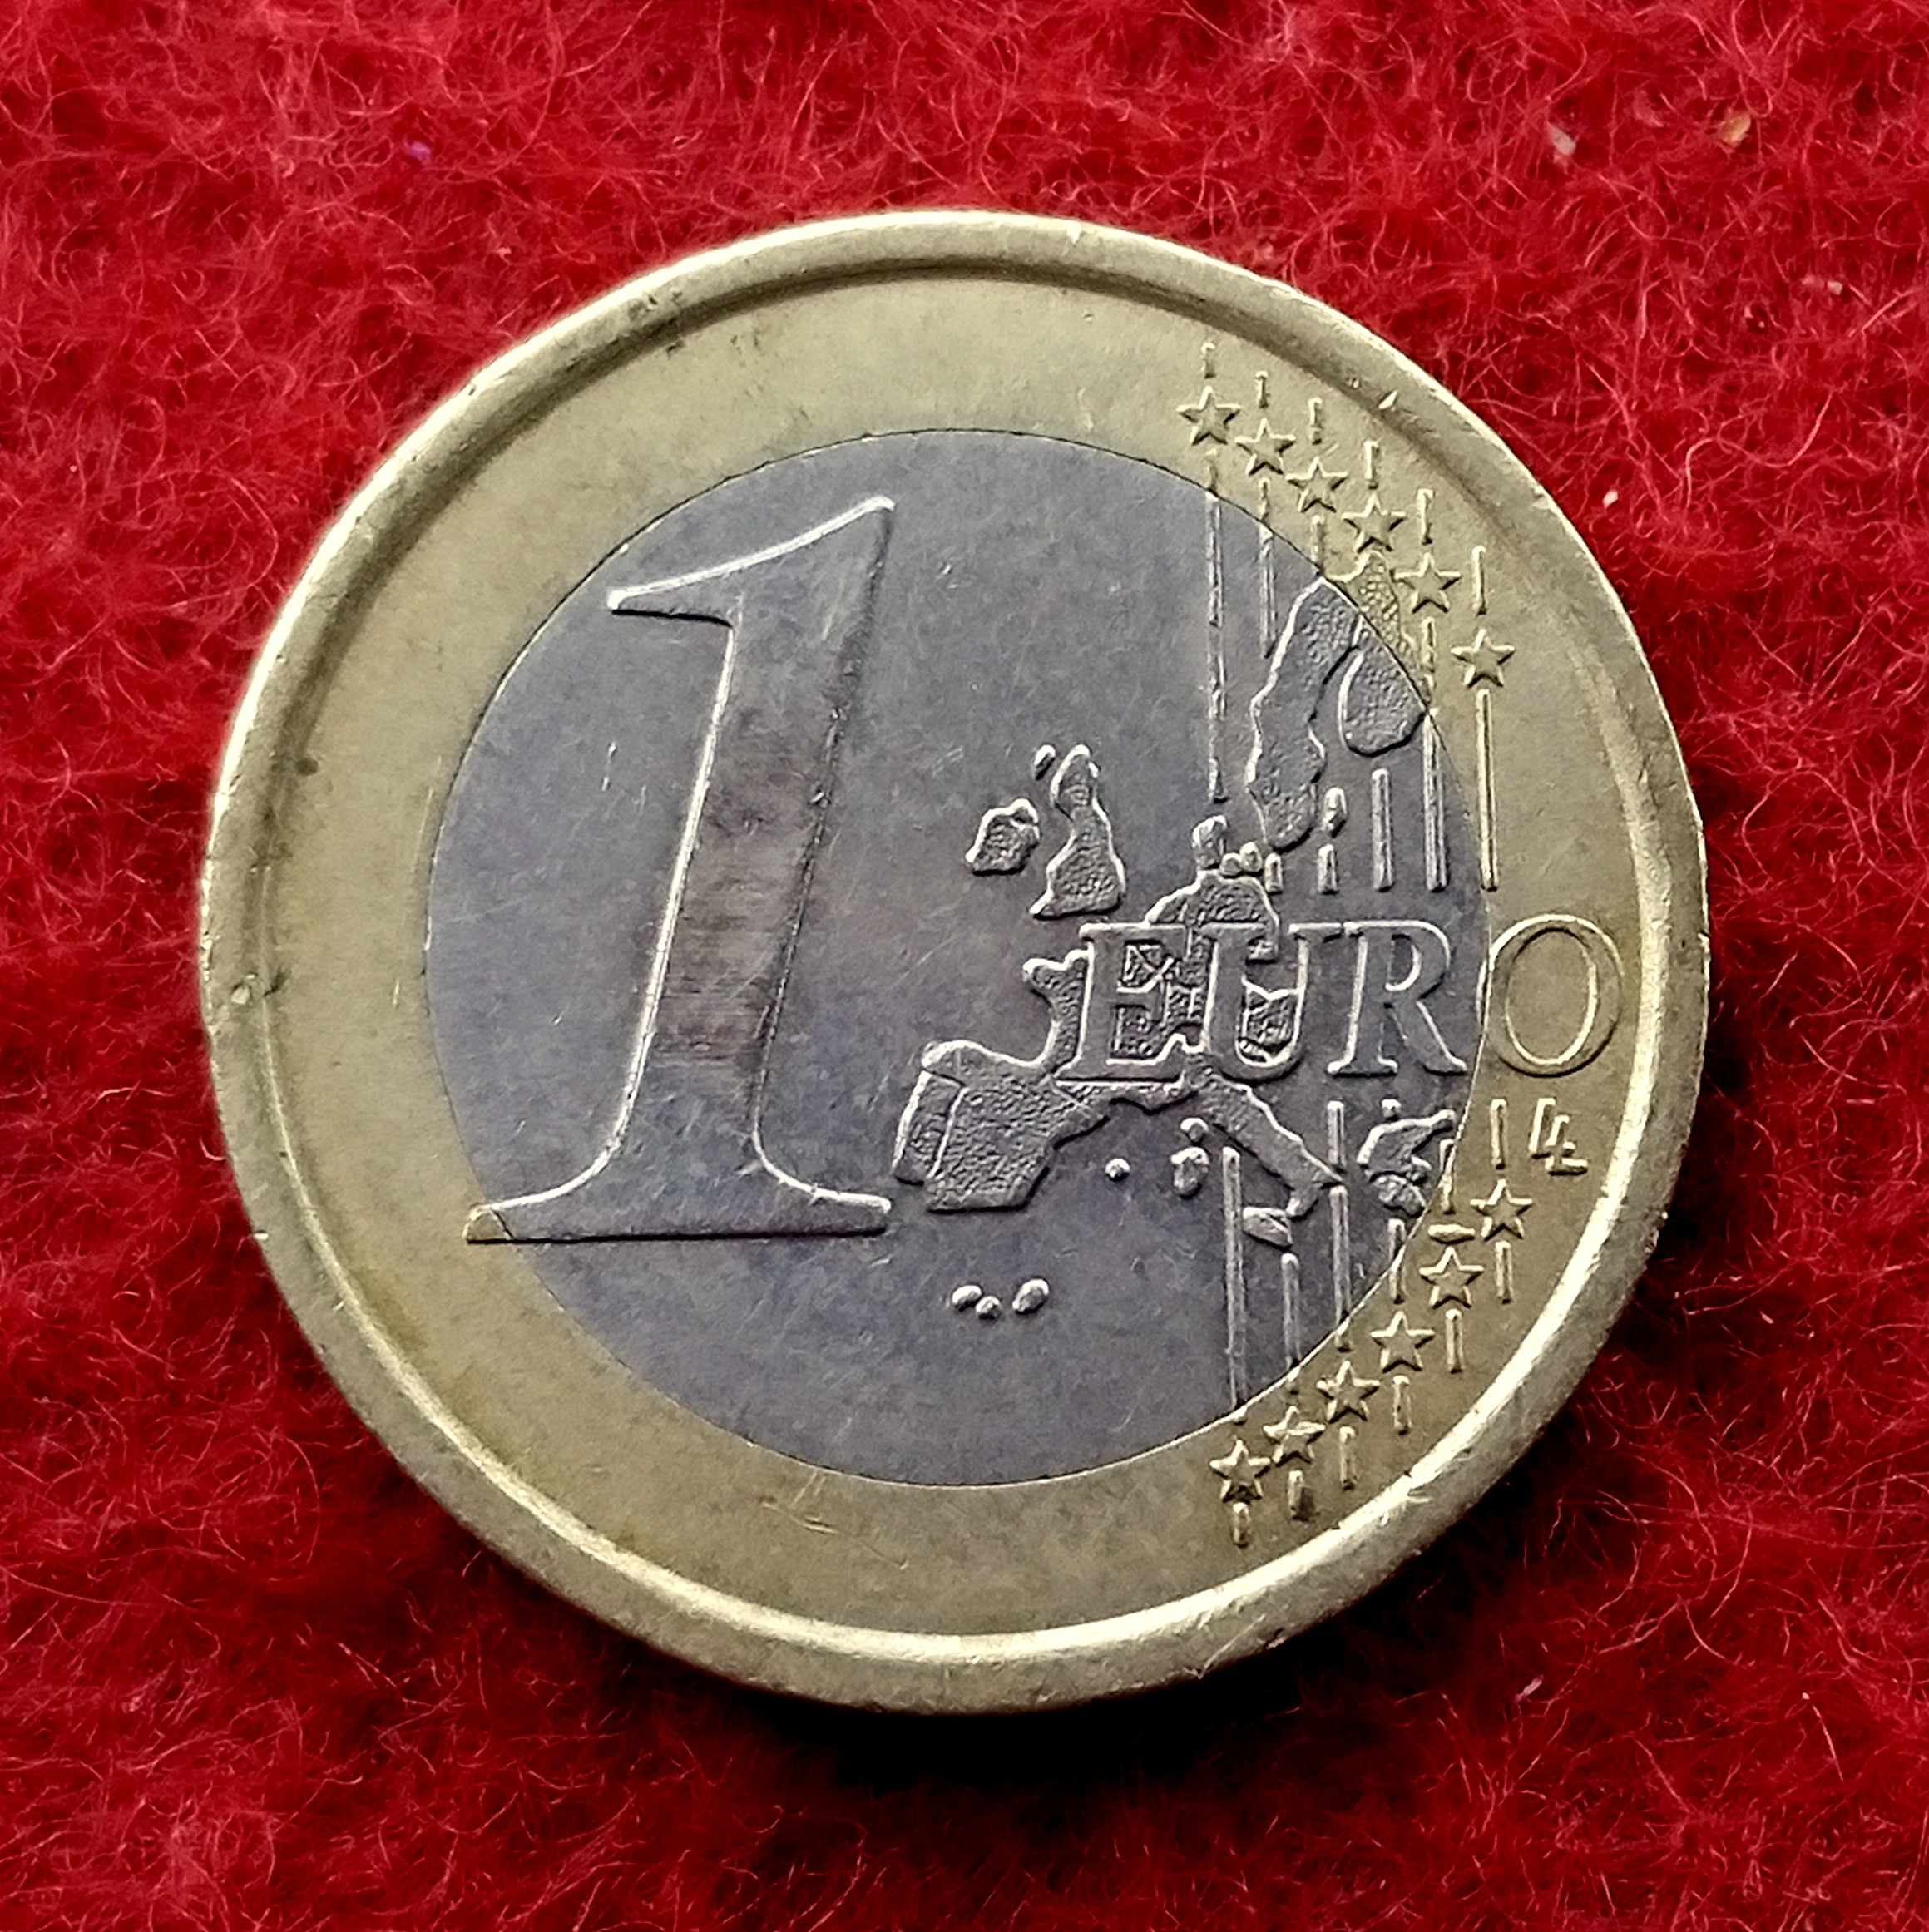 Coin 1 euro Italy 2002 Real, collection, euro coins, foreign money